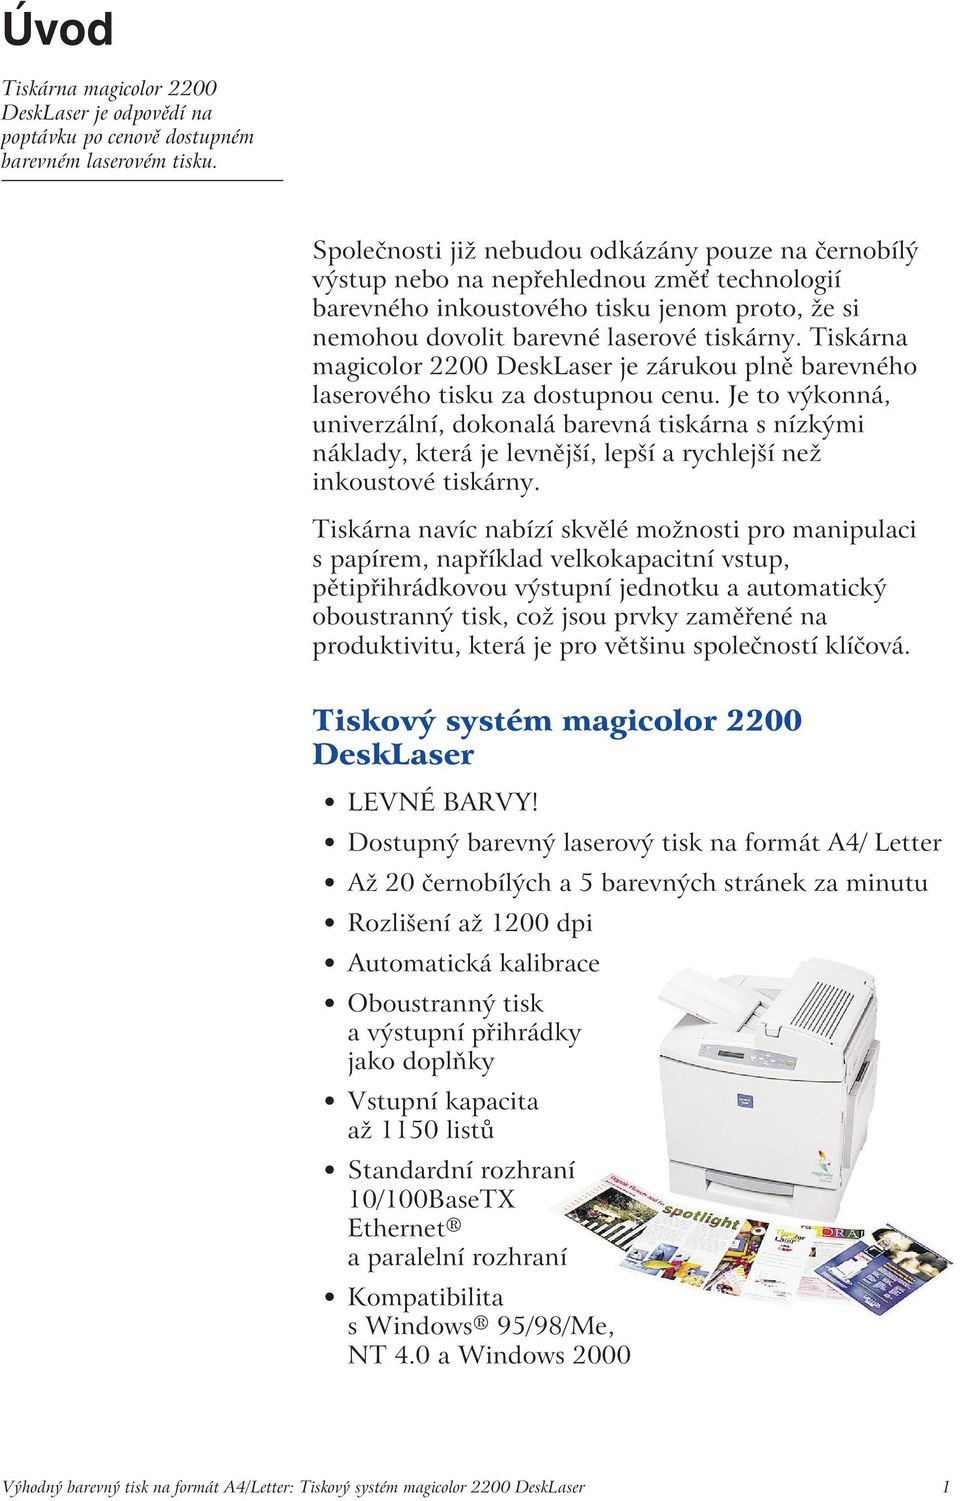 Tiskárna magicolor 2200 DeskLaser je zárukou plně barevného laserového tisku za dostupnou cenu.